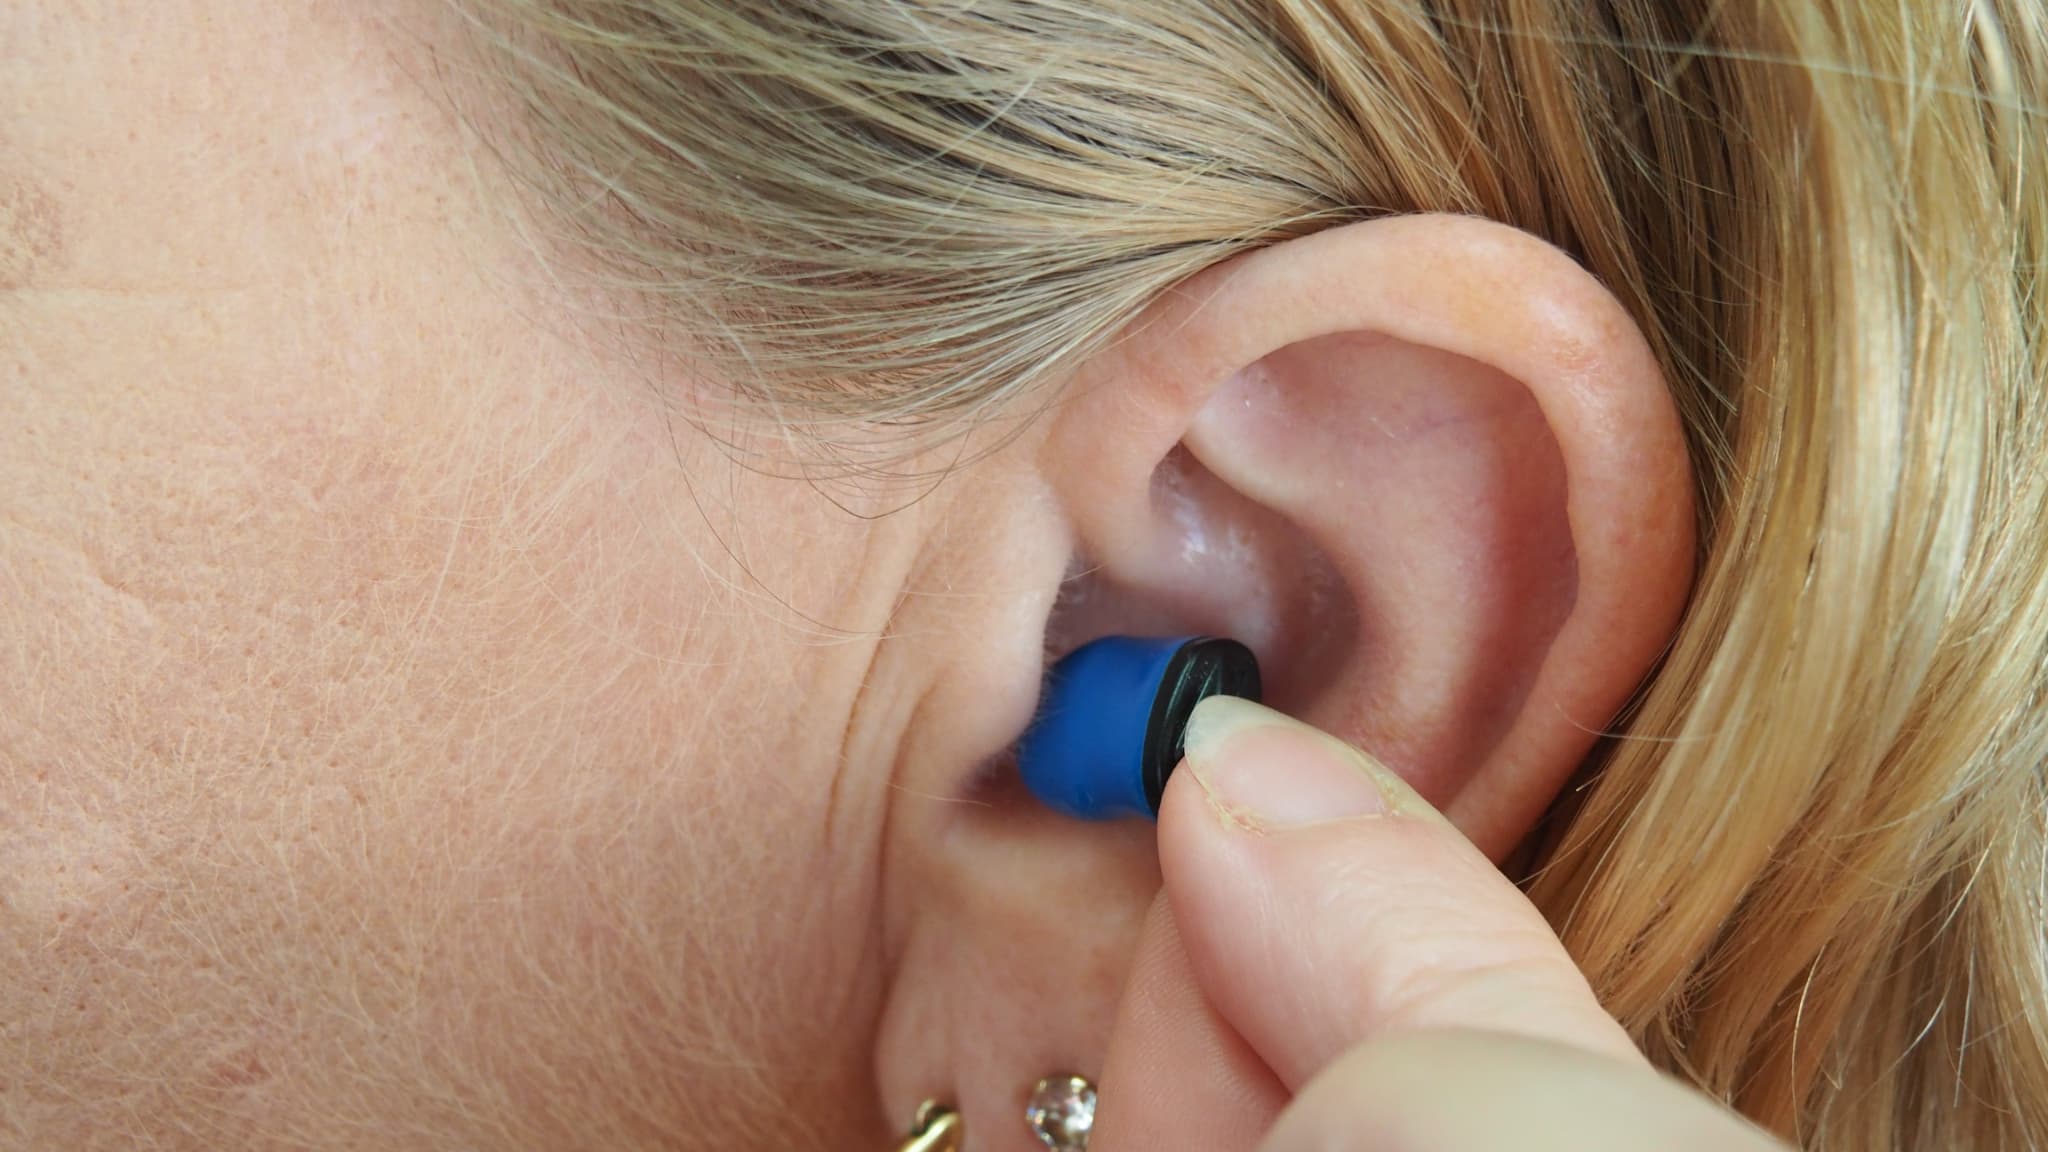 Protégez vos oreilles avec des bouchons d'oreille sur mesure